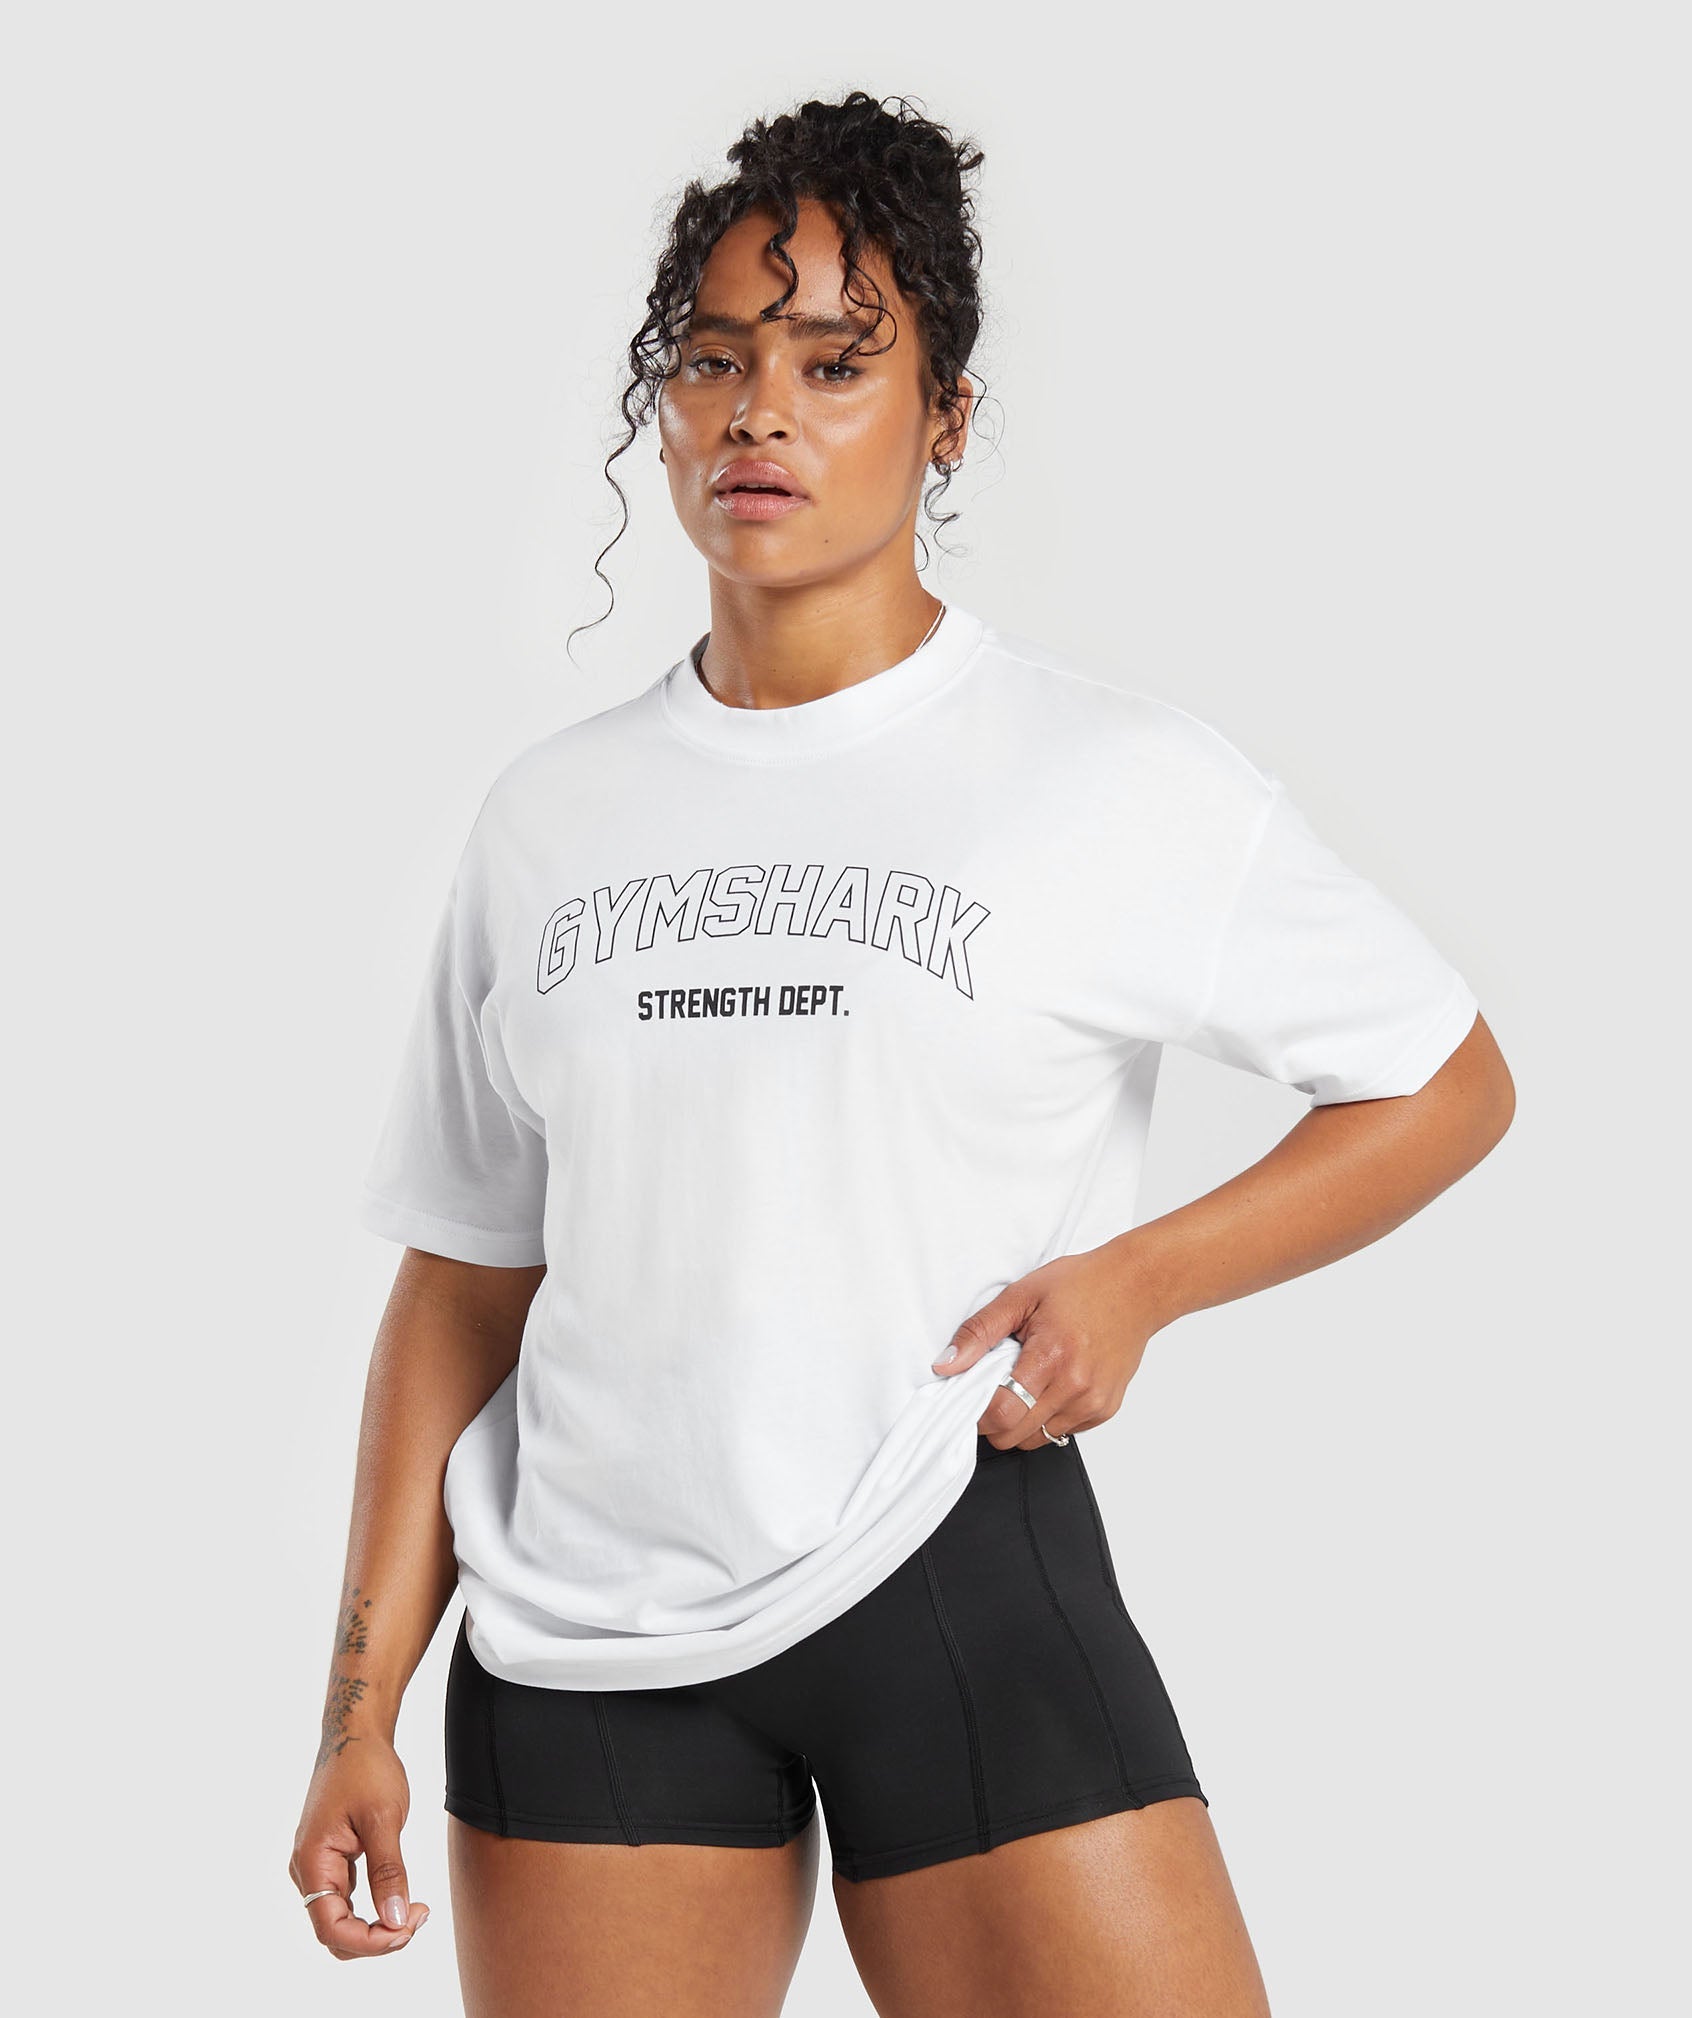 Gymshark Strength Department Oversized T-Shirt - White